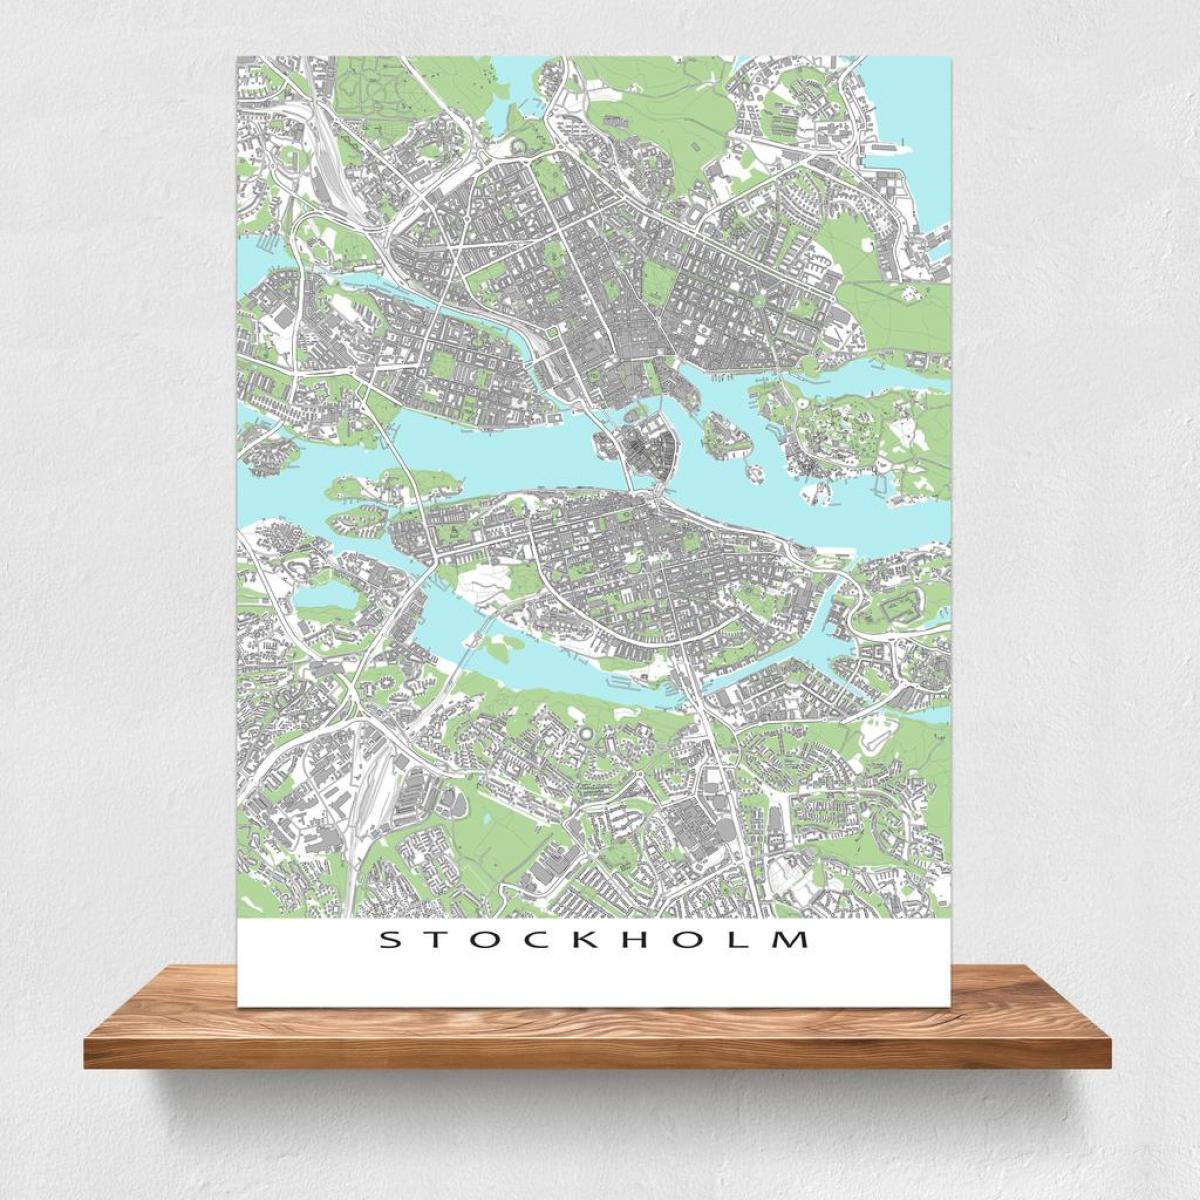 карта Стокгольма распечатать карту 